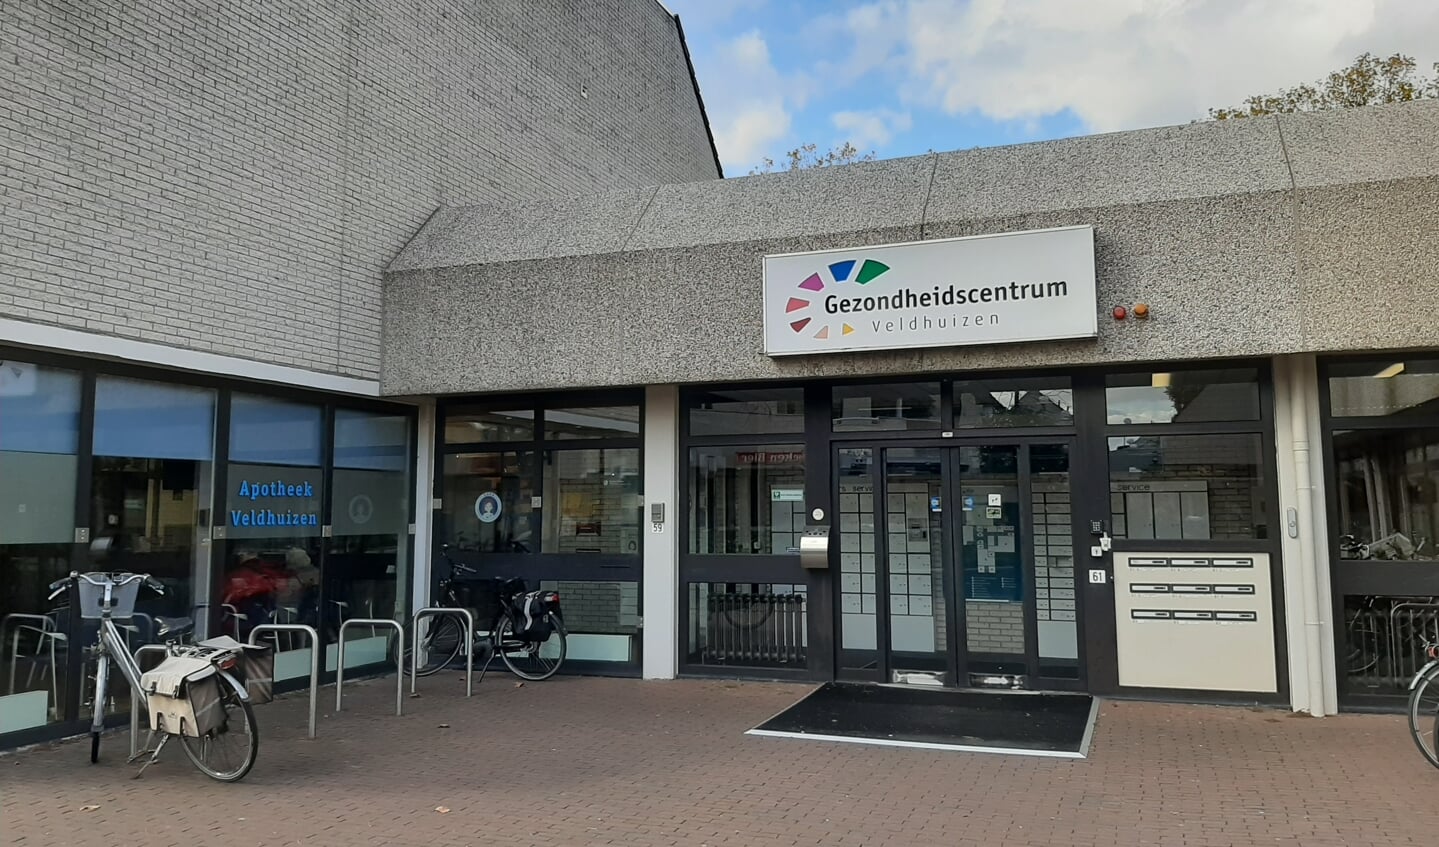 Hoofdingang Gezondheidscentrum Veldhuizen aan de Bellestein.